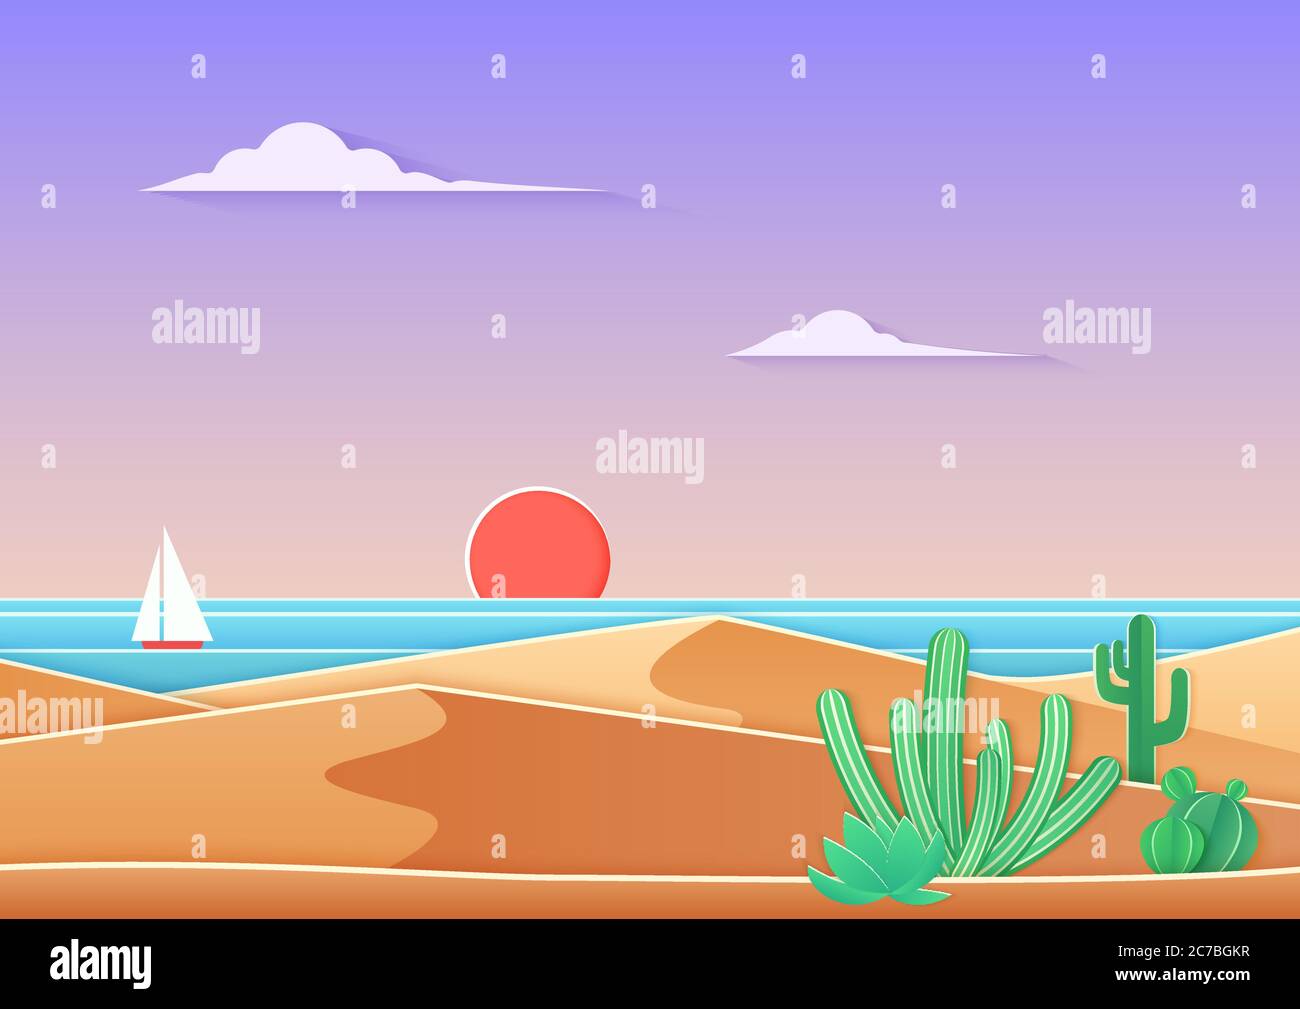 Cactus dans le paysage du désert avec mer et bateau dans le style d'art en papier dégradé tendance avec cuted. Illustration du vecteur de coucher de soleil dans le désert près de l'océan Illustration de Vecteur